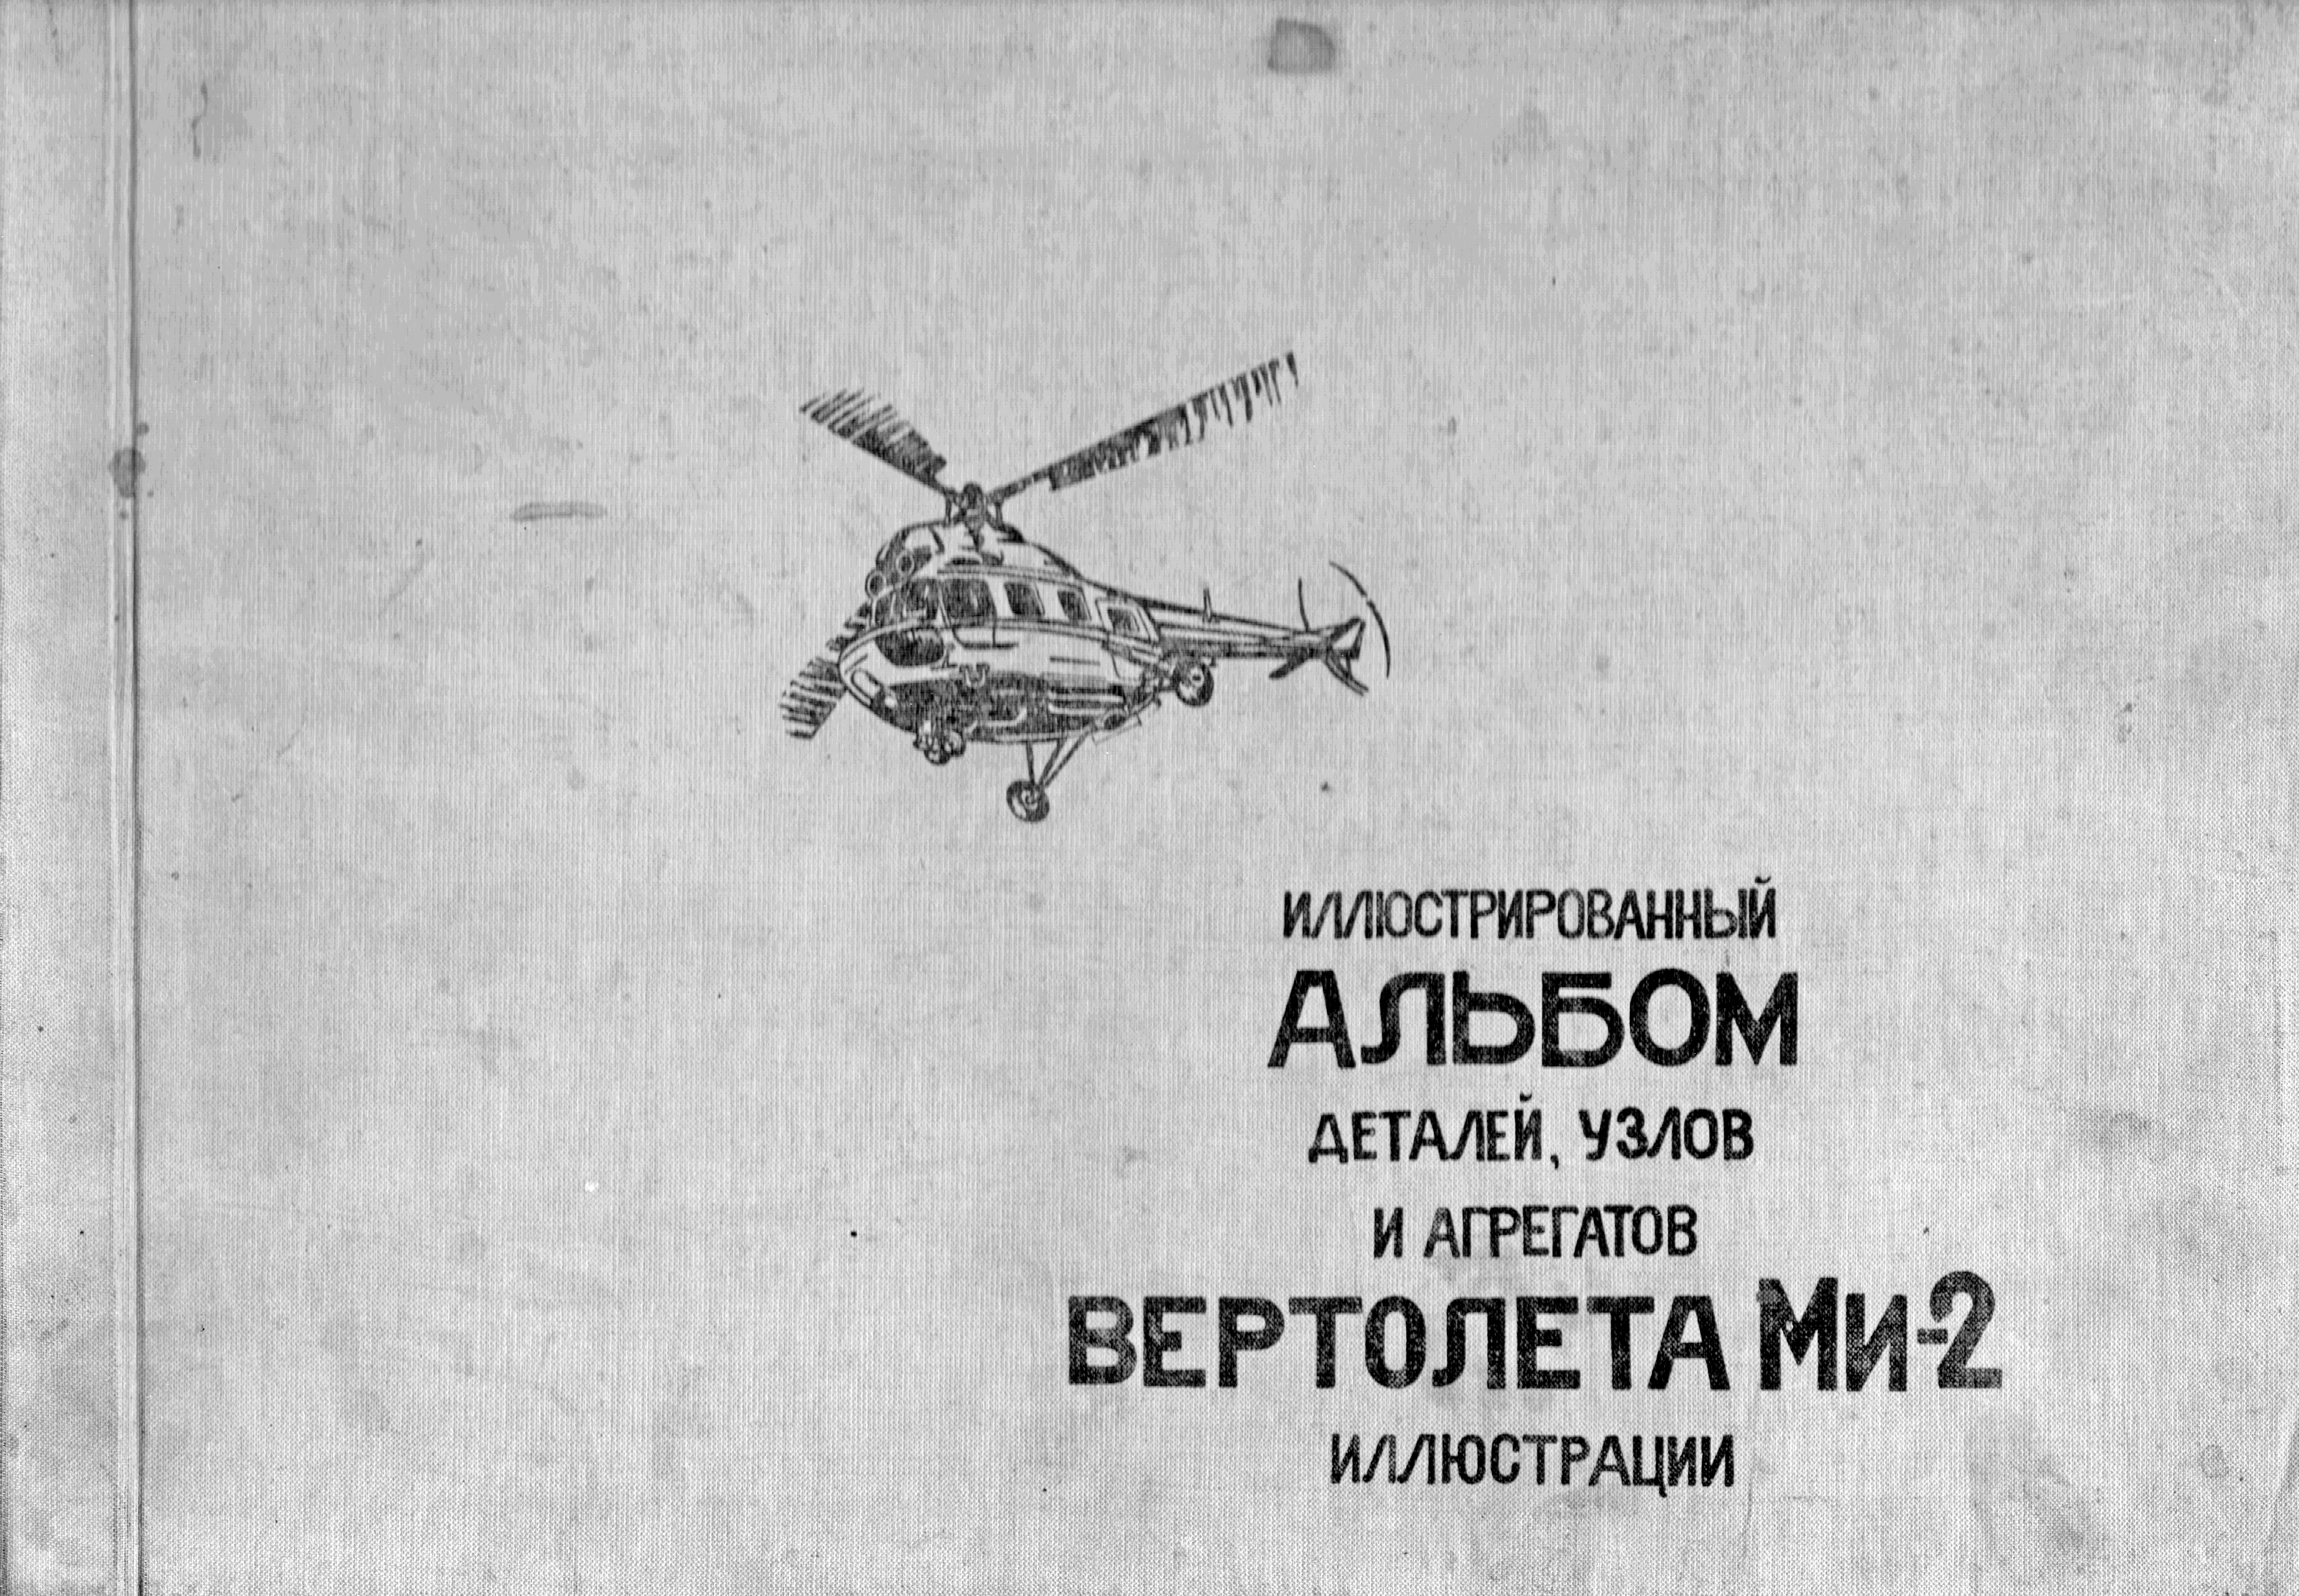 Ми 8 книга. Иллюстрированный каталог деталей вертолета. Каталог деталей вертолета ми-8. Альбом деталей вертолёта ми-26. Иллюстрированный каталог деталей вертолёта ми-26.